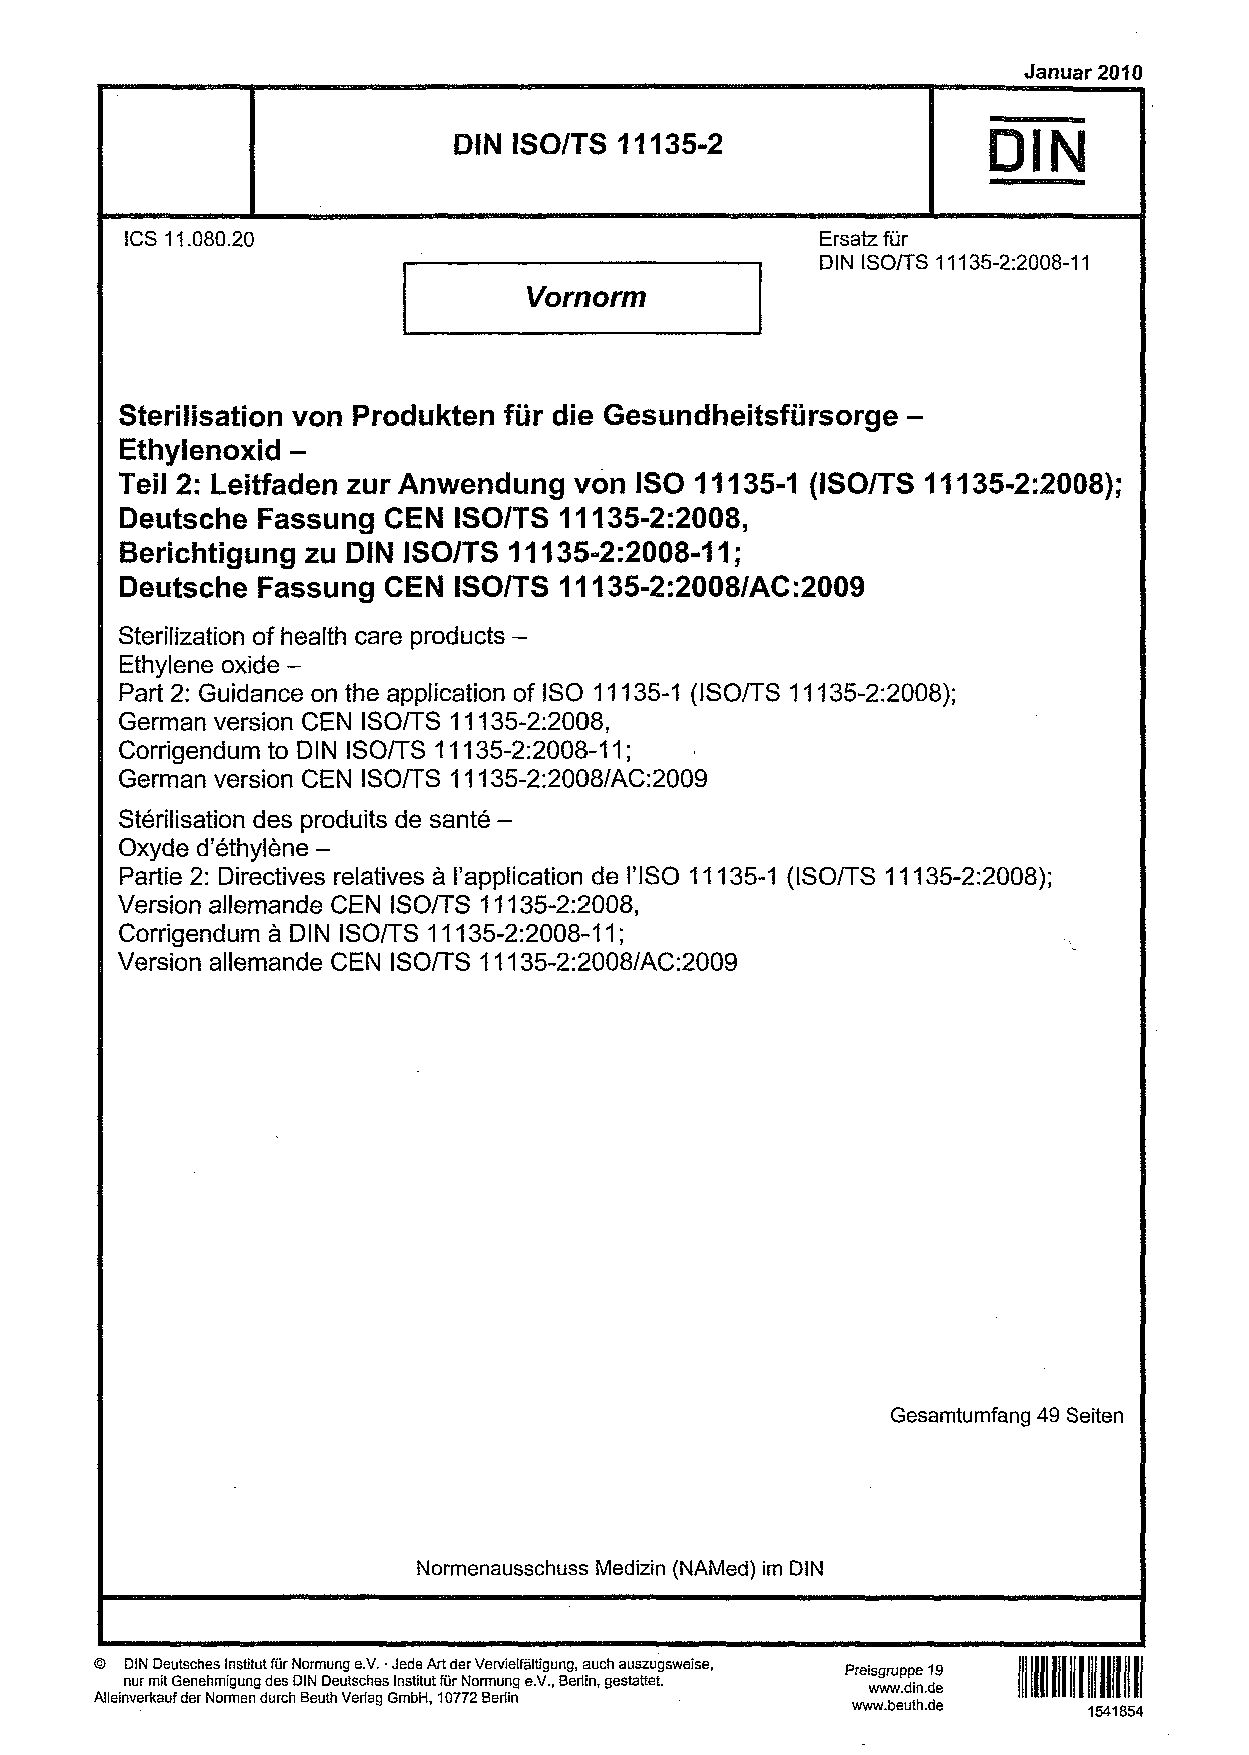 DIN ISO/TS 11135-2:2010